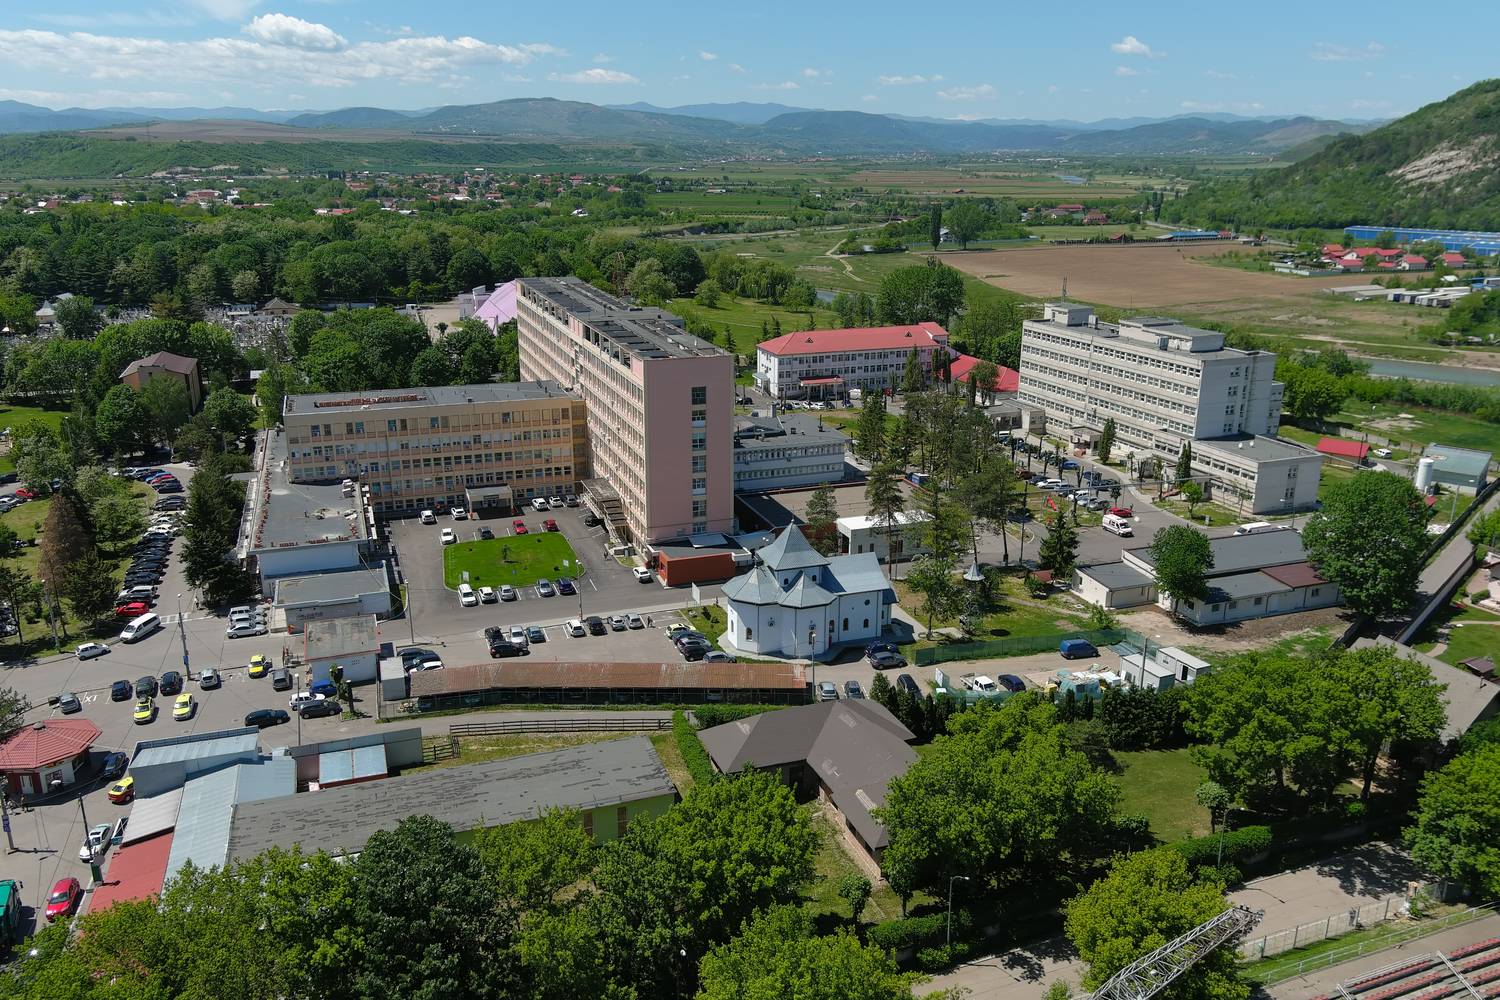 Manelli Impresa: migliorare la performance energetica dell'Ospedale Municipale “SF. Ierarh Dr. Luca”